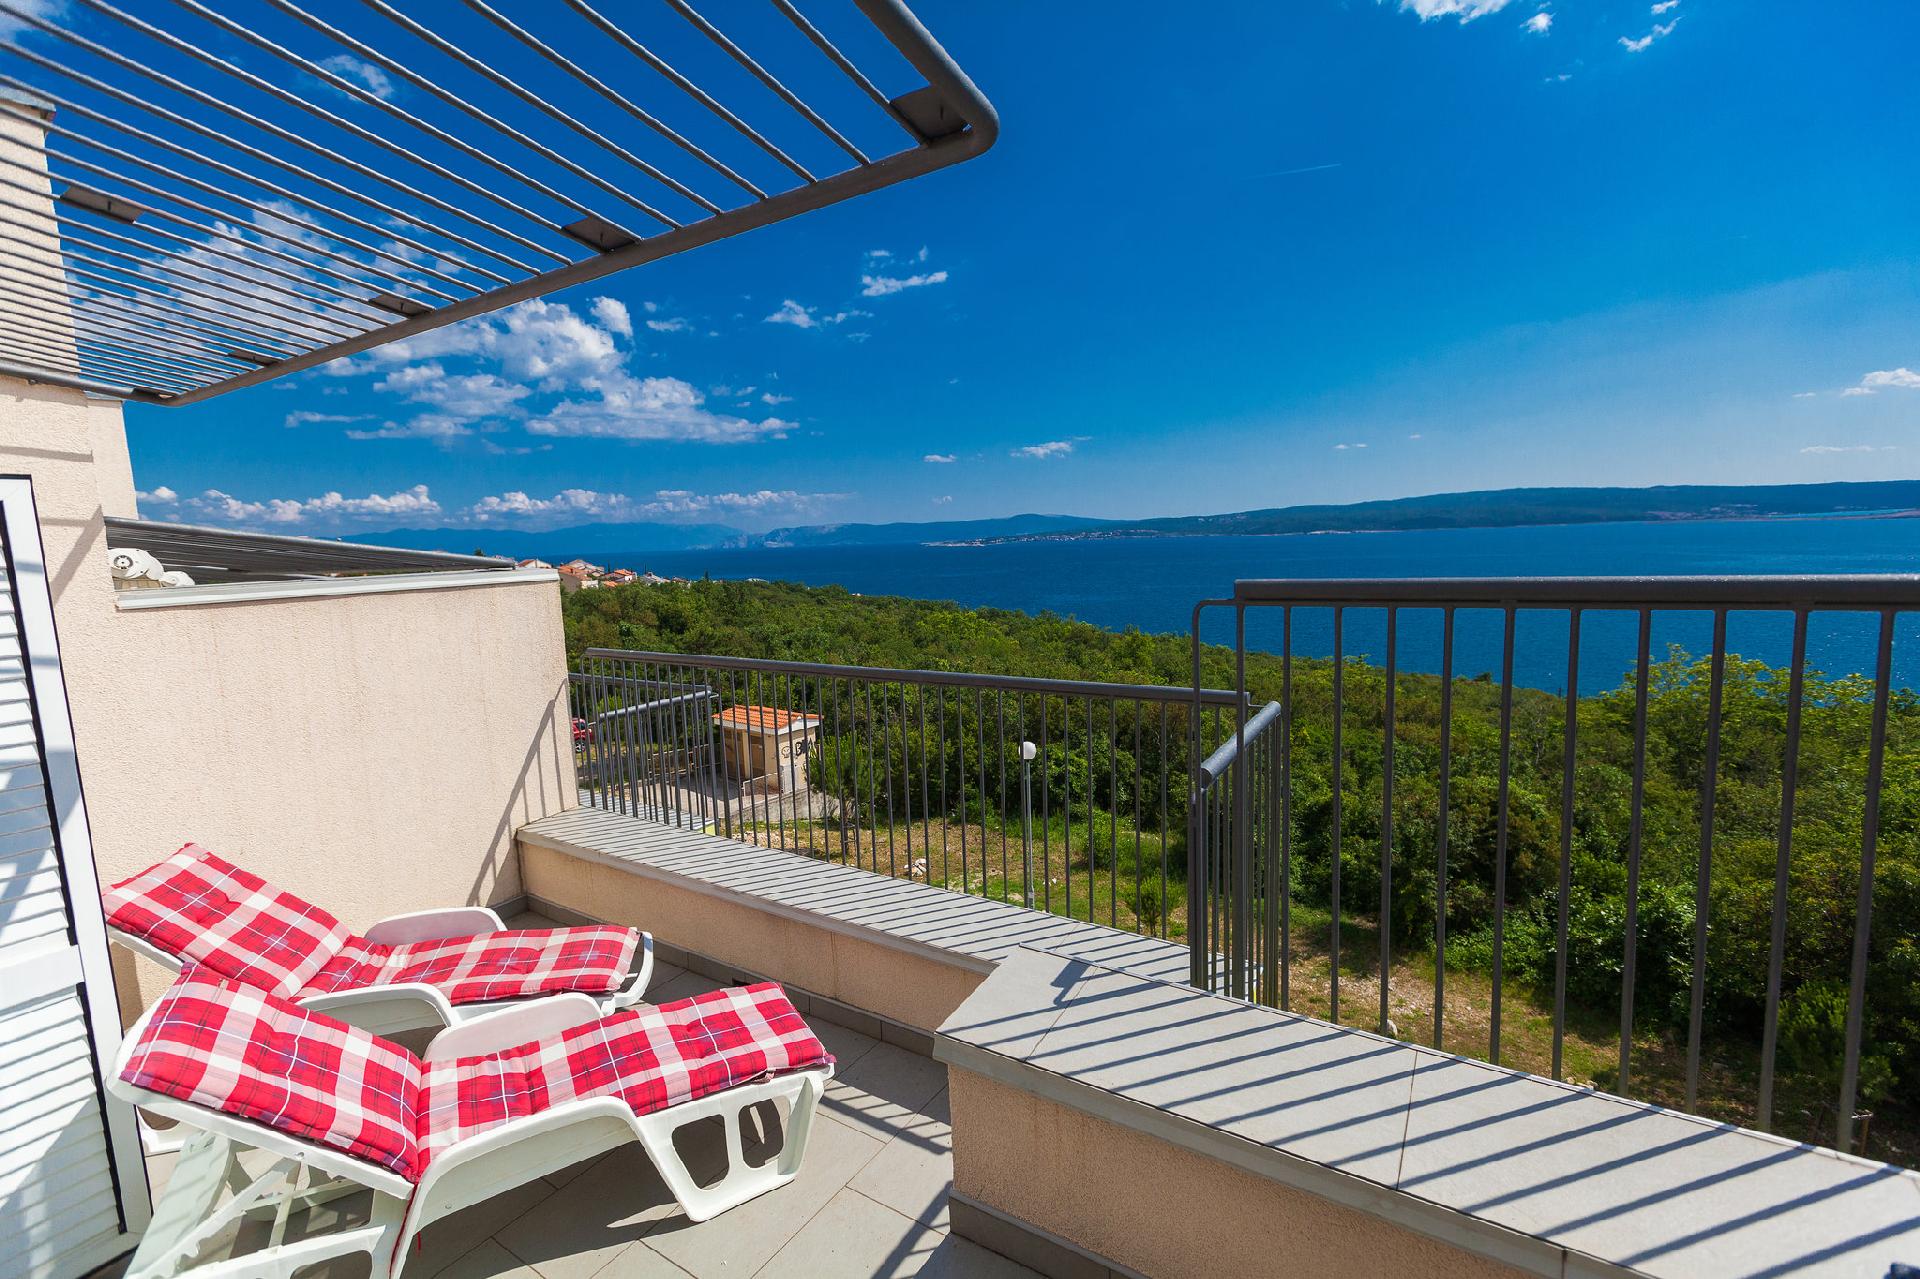 Ferienwohnung für 4 Personen ca. 92 m² i  in Kroatien